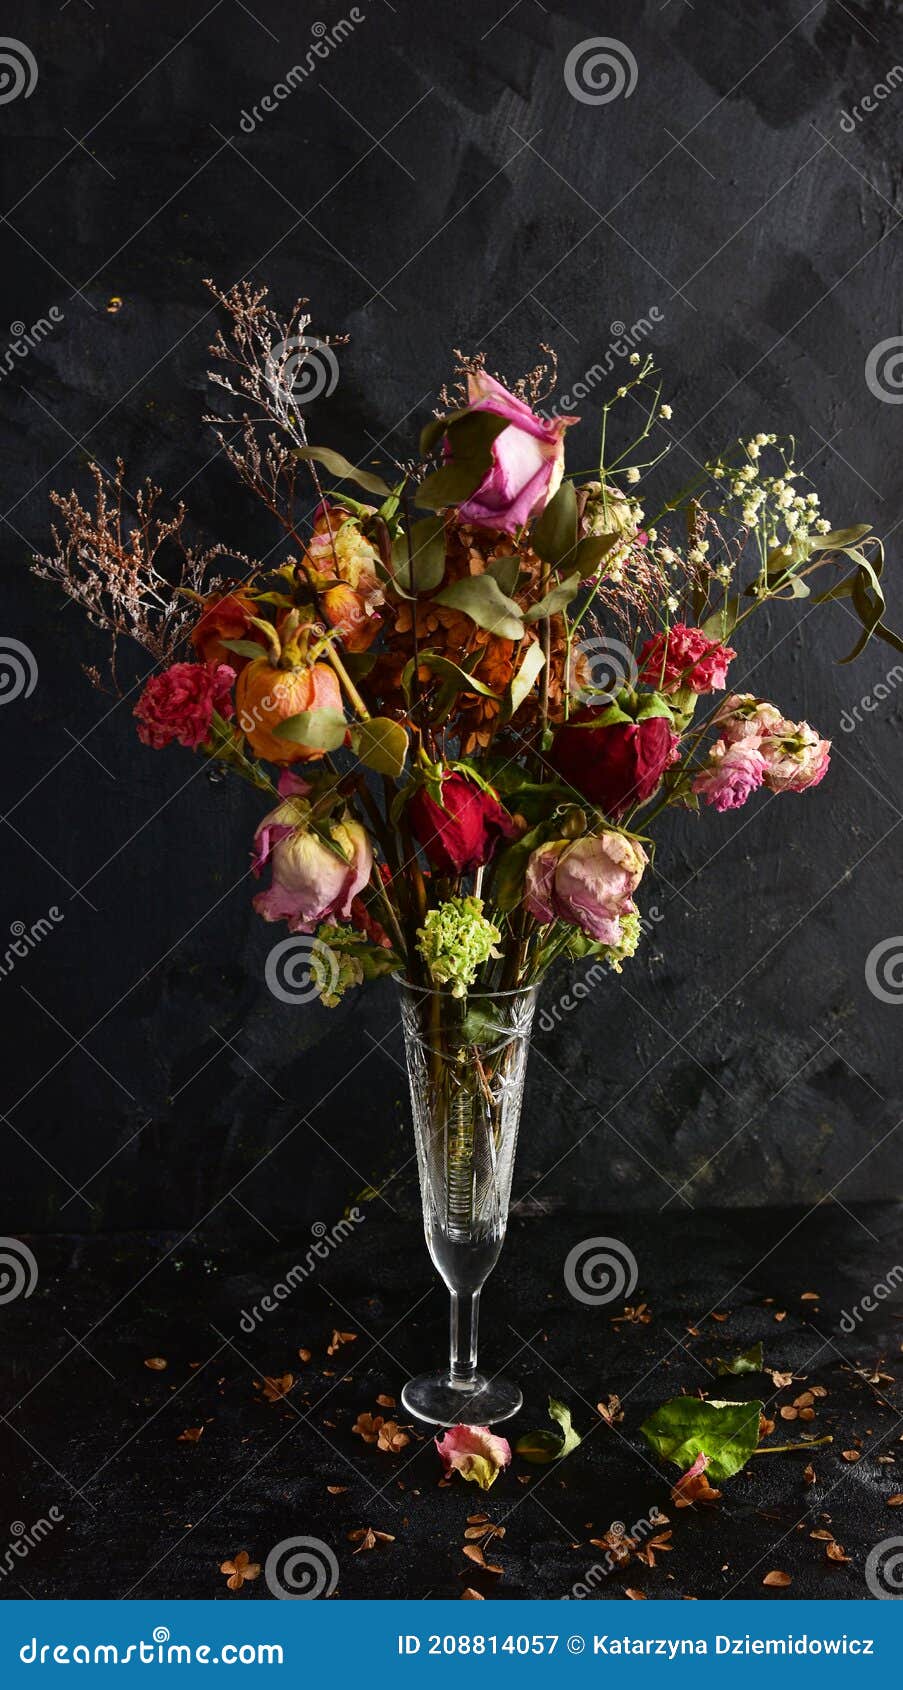 Flores Secas Decorativas En Florero De Vidrio Y Calabaza Imagen de archivo  - Imagen de decorativo, transparente: 204459351